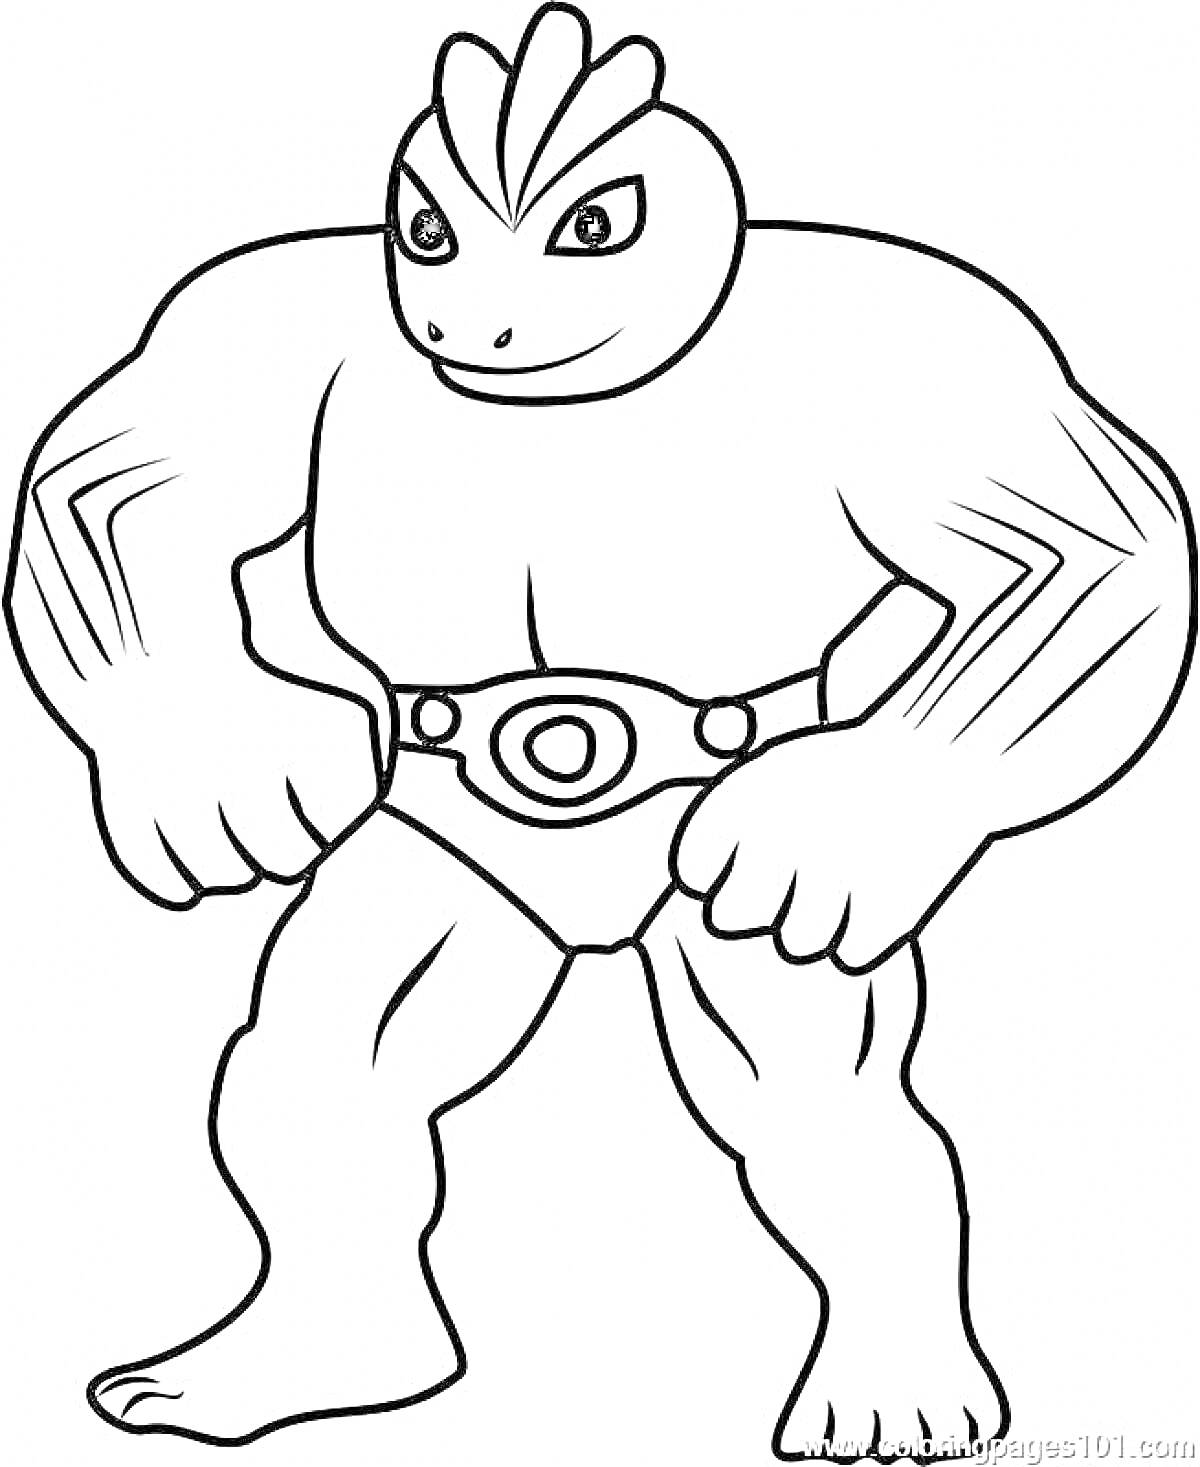 Раскраска Супергерой Гуджицу с мускулистыми руками и ногами в трусах с поясом